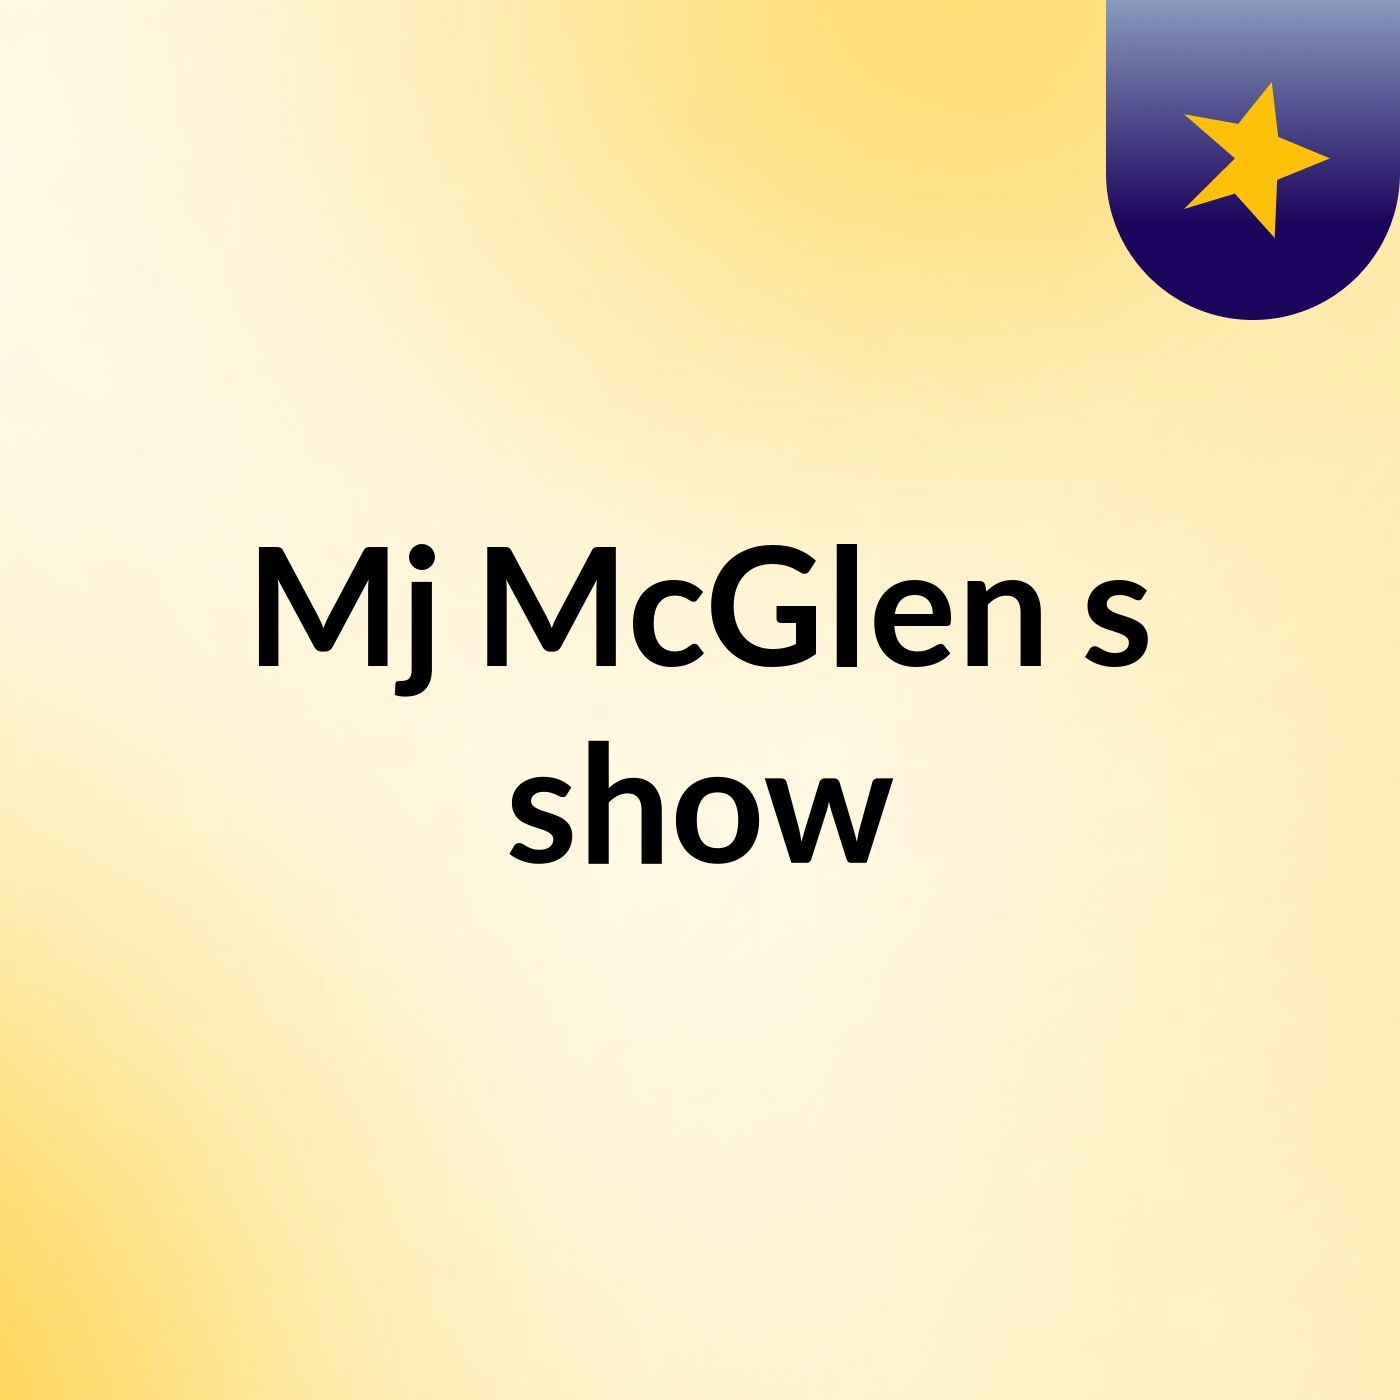 Episode 5 - Mj McGlen's show